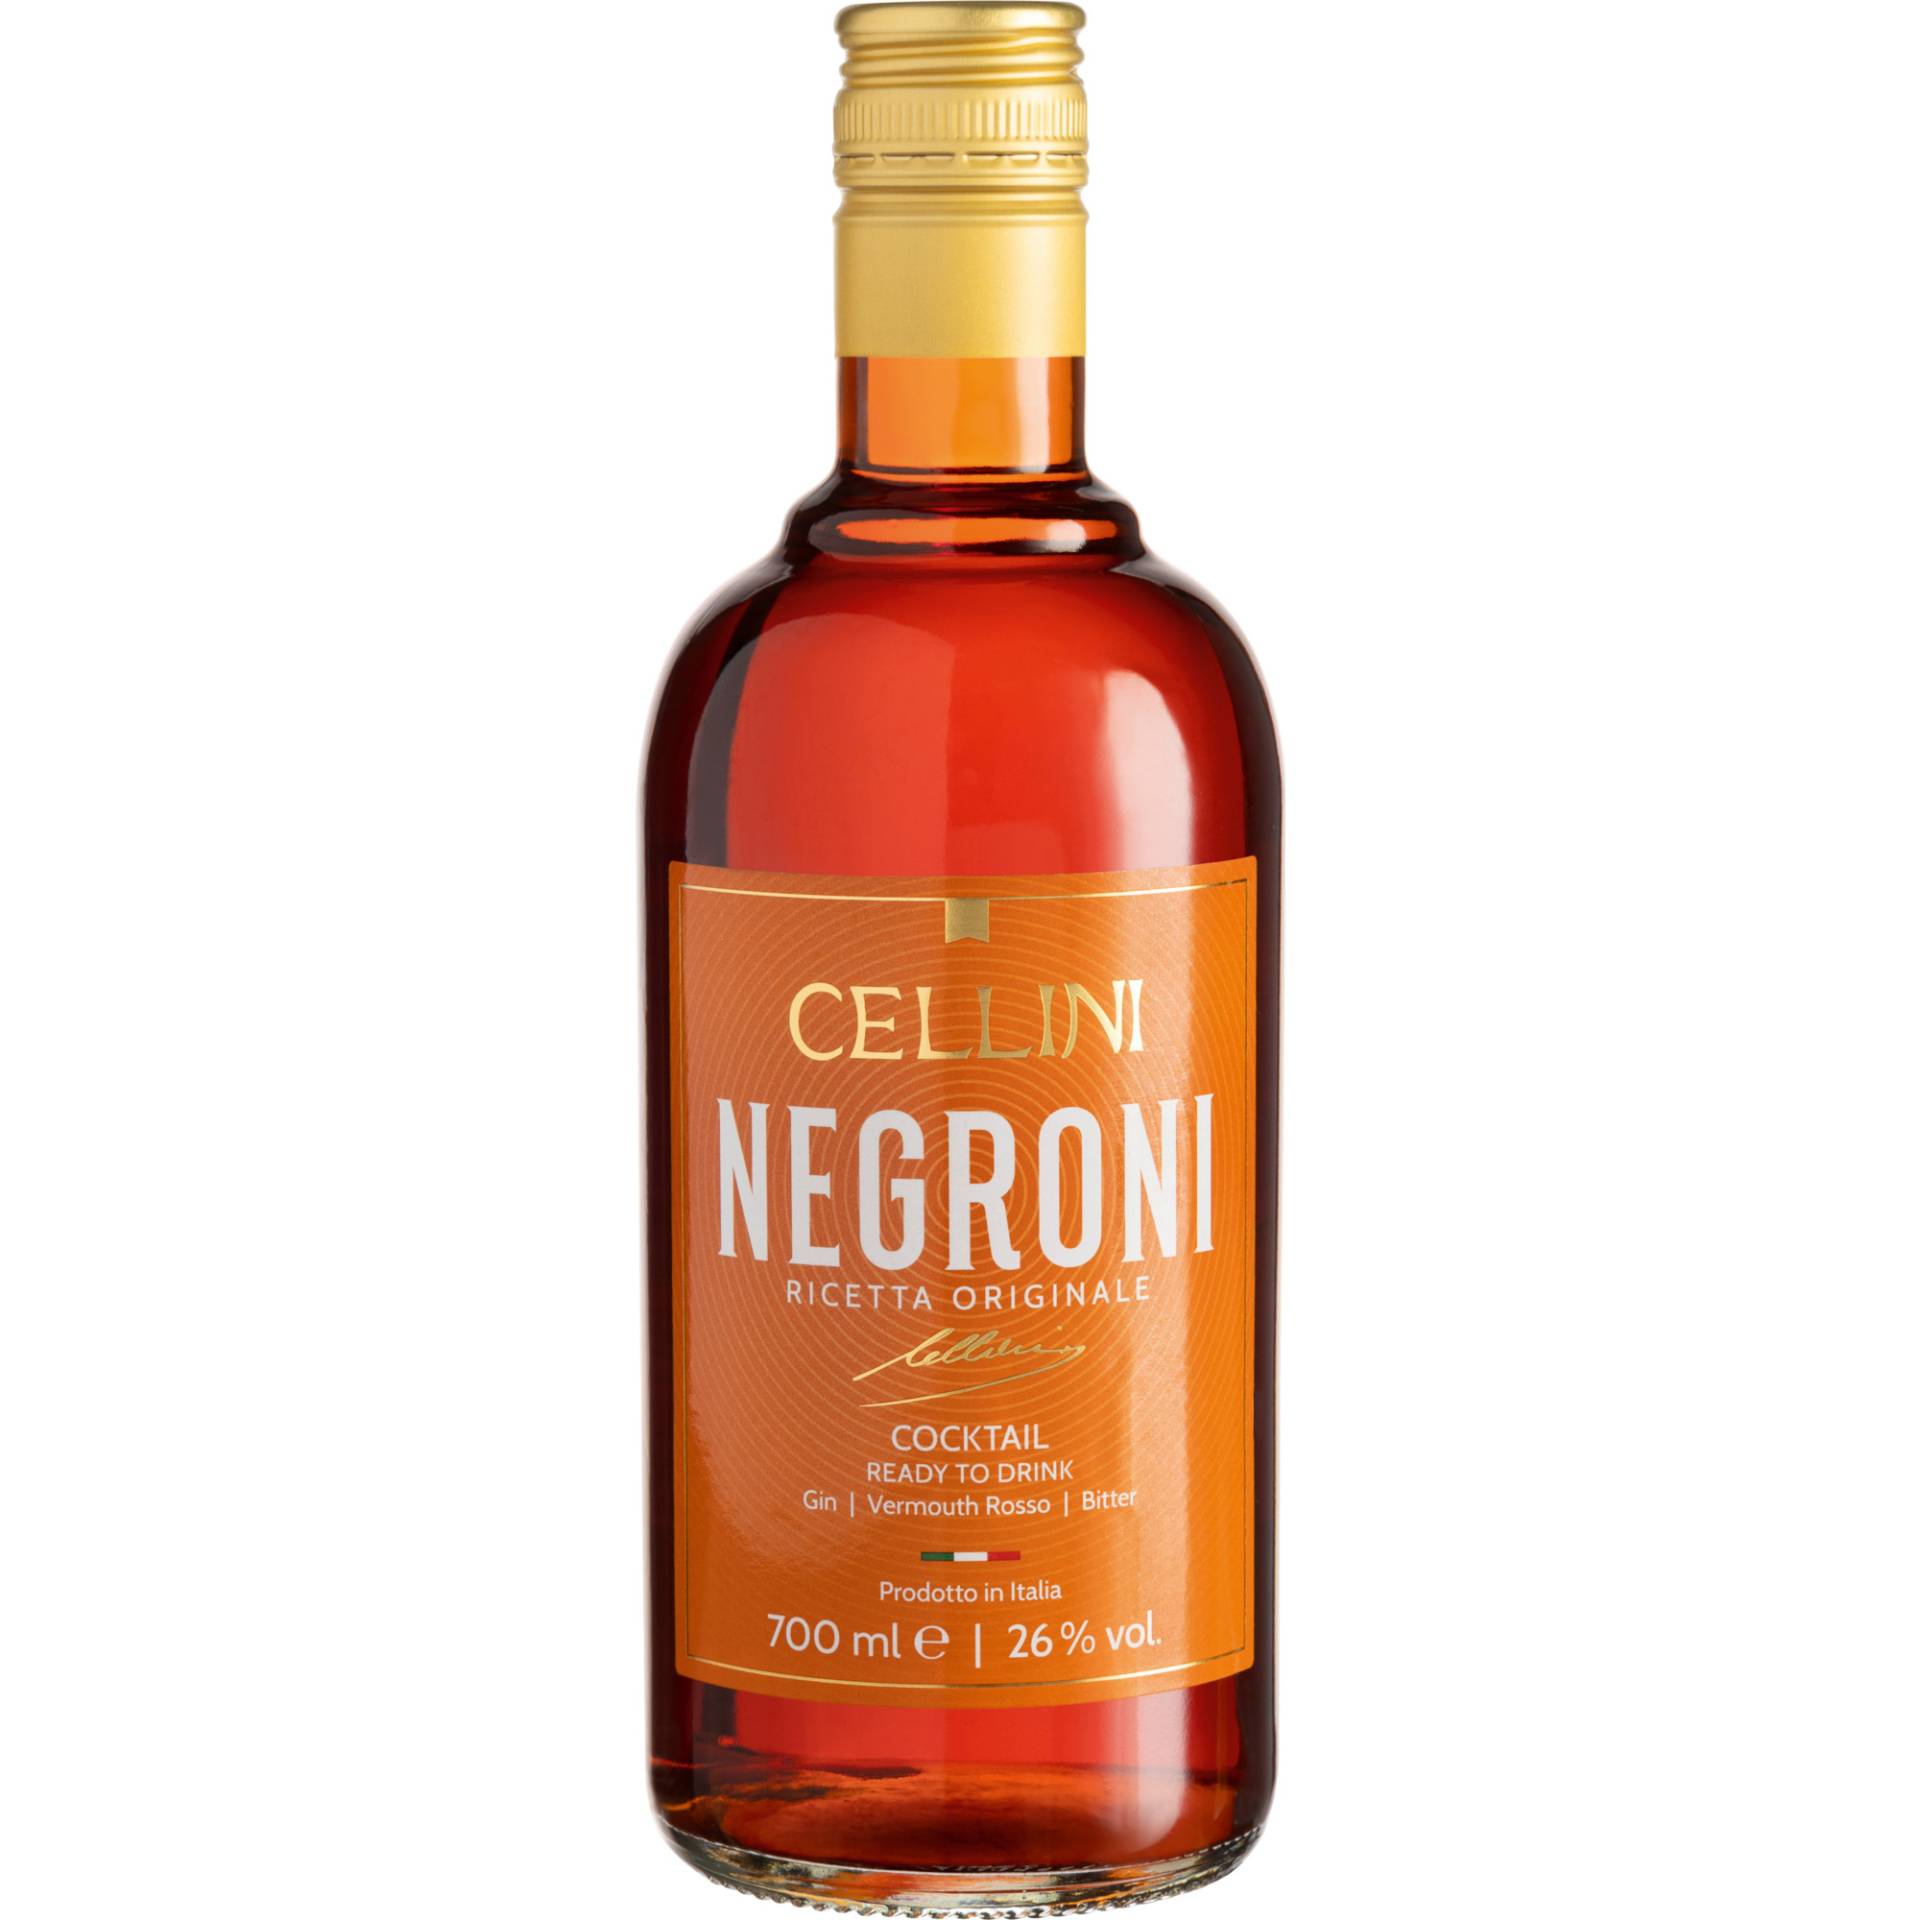 Cellini Negroni, Italien, 0,7 L, 26% Vol., Venetien, Spirituosen von Vertrieb durch Herzberger GmbH & Co. KG, Am Felsbrunnen 8, 66119 Saarbrücken